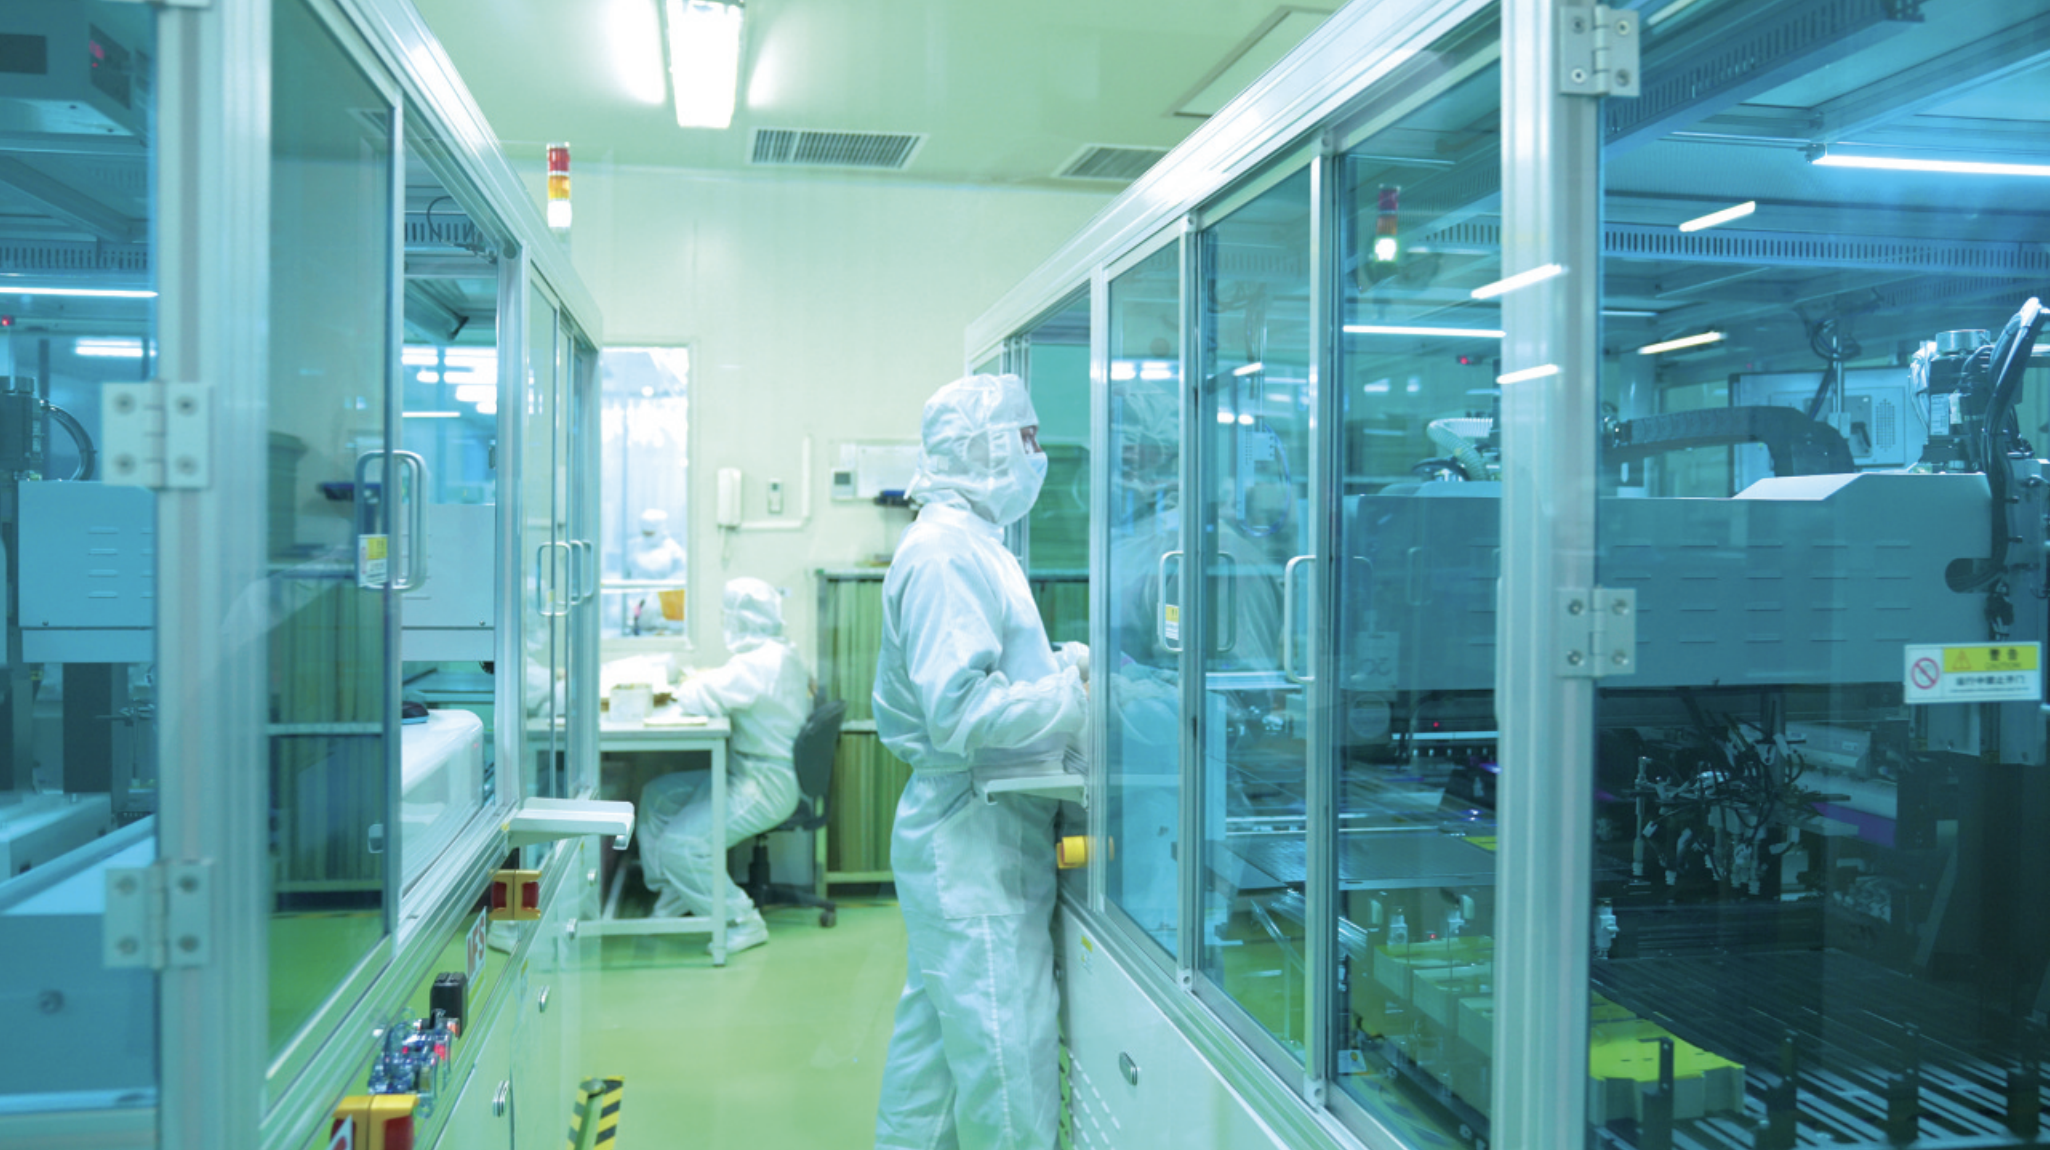 湖南维胜科技有限公司是一家主营柔性印制电路板生产及元器件组装的企业。谭园 摄